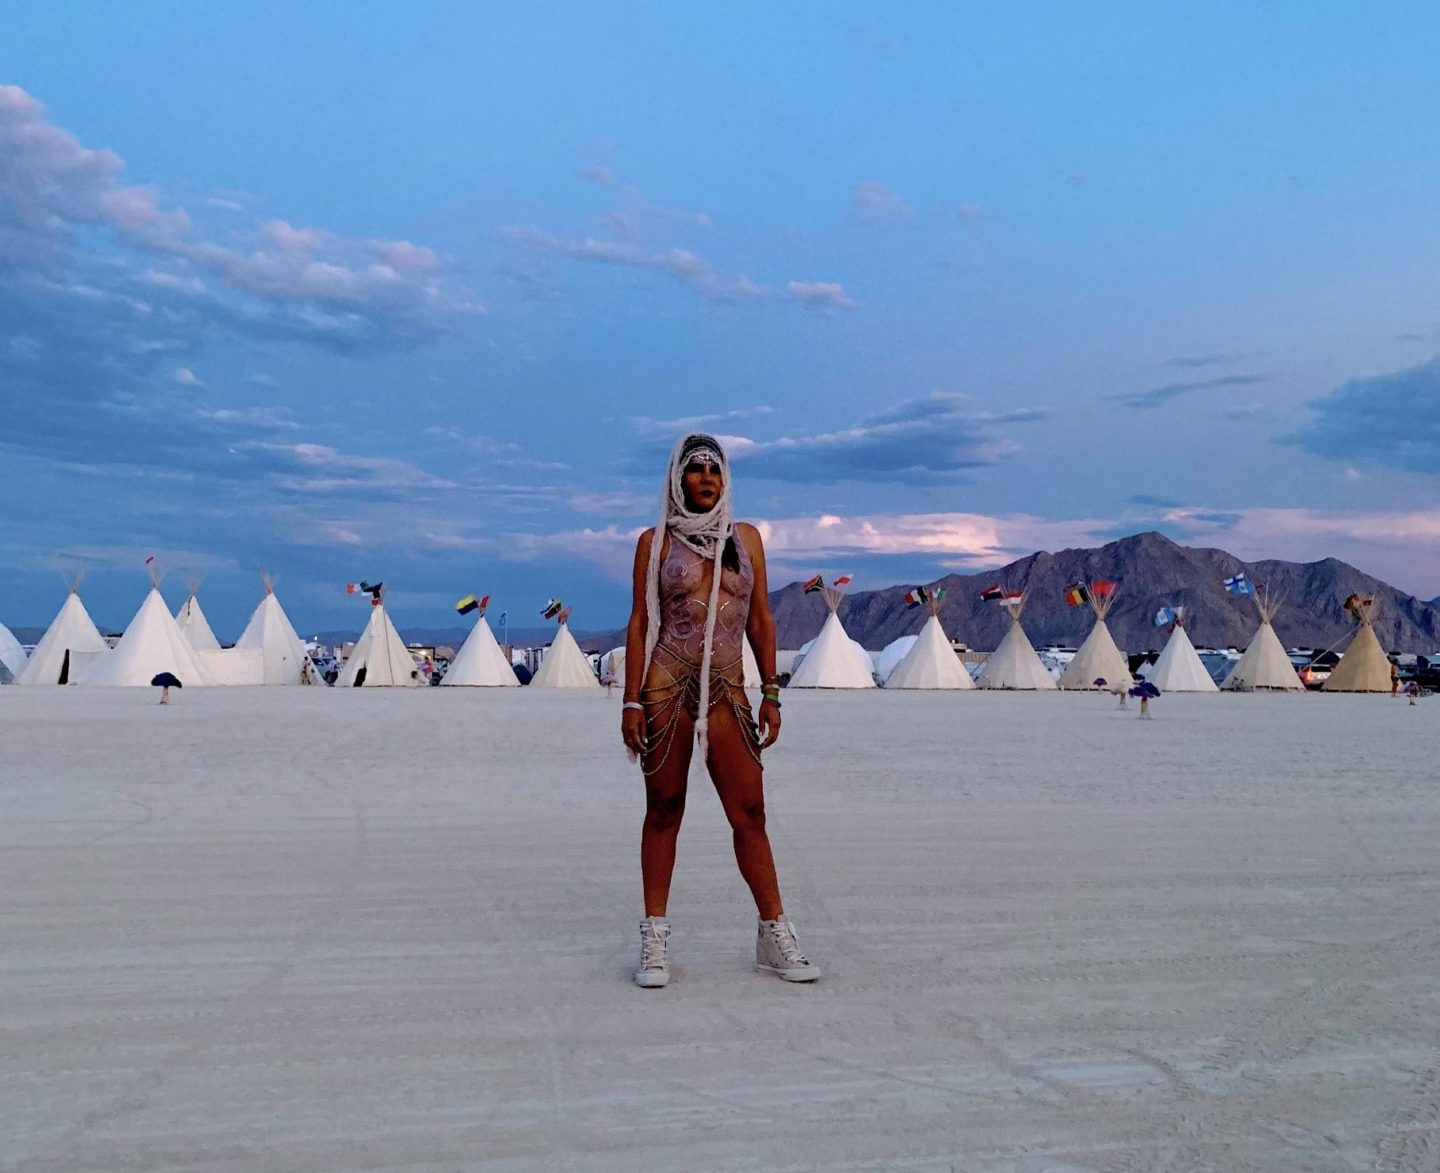 My Experience at Burning Man